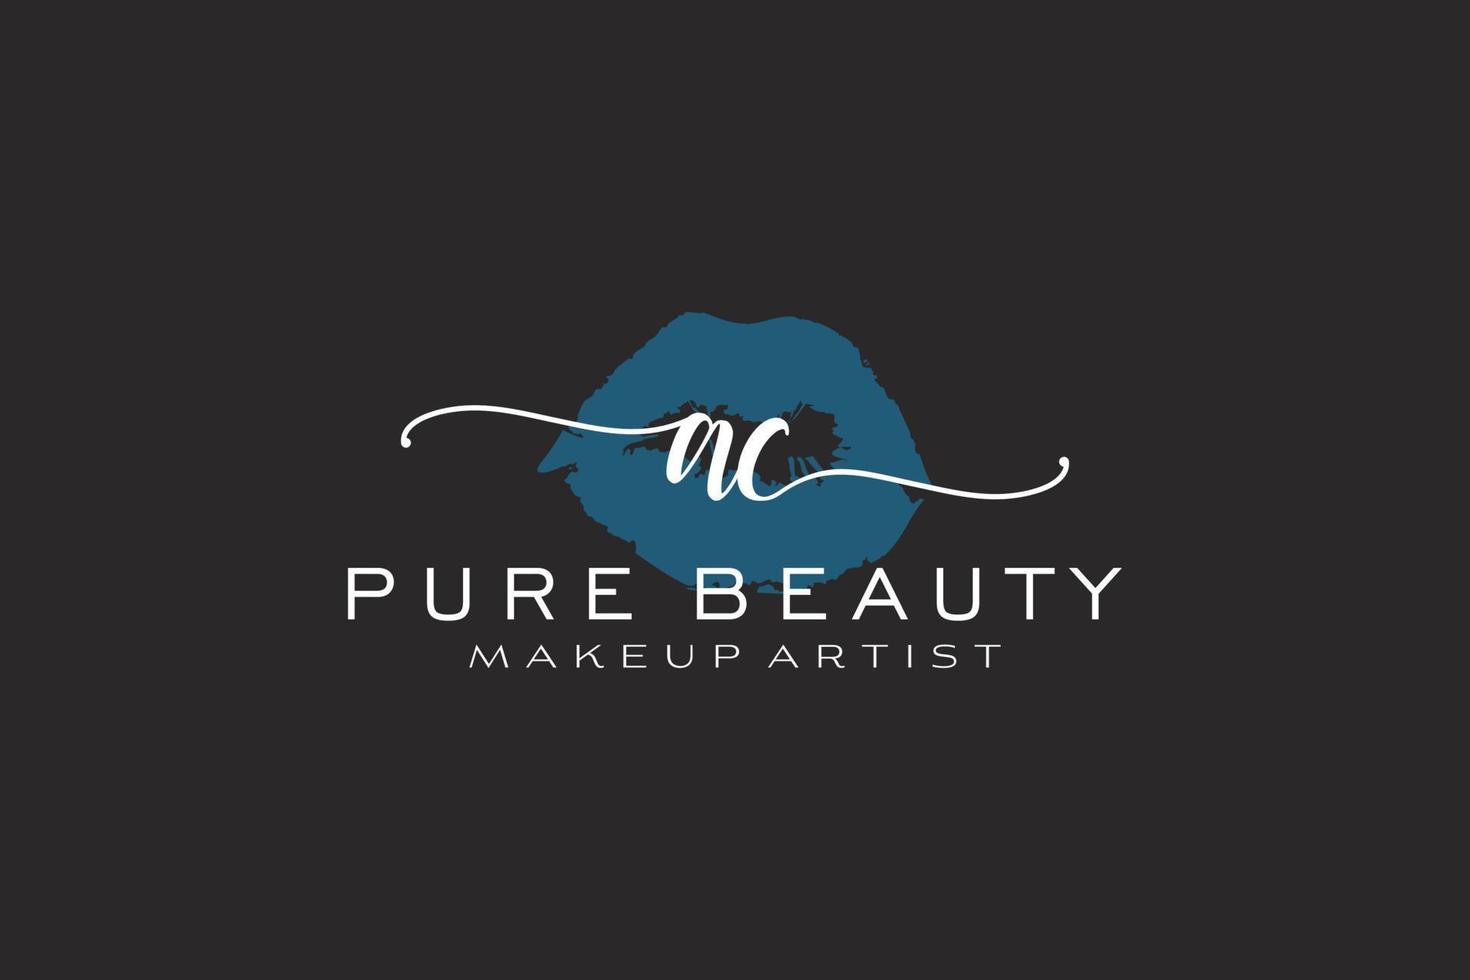 vorgefertigtes Logo-Design mit anfänglichen Wechselstrom-Aquarelllippen, Logo für Make-up-Künstler-Business-Branding, Blush-Beauty-Boutique-Logo-Design, Kalligrafie-Logo mit kreativer Vorlage. vektor